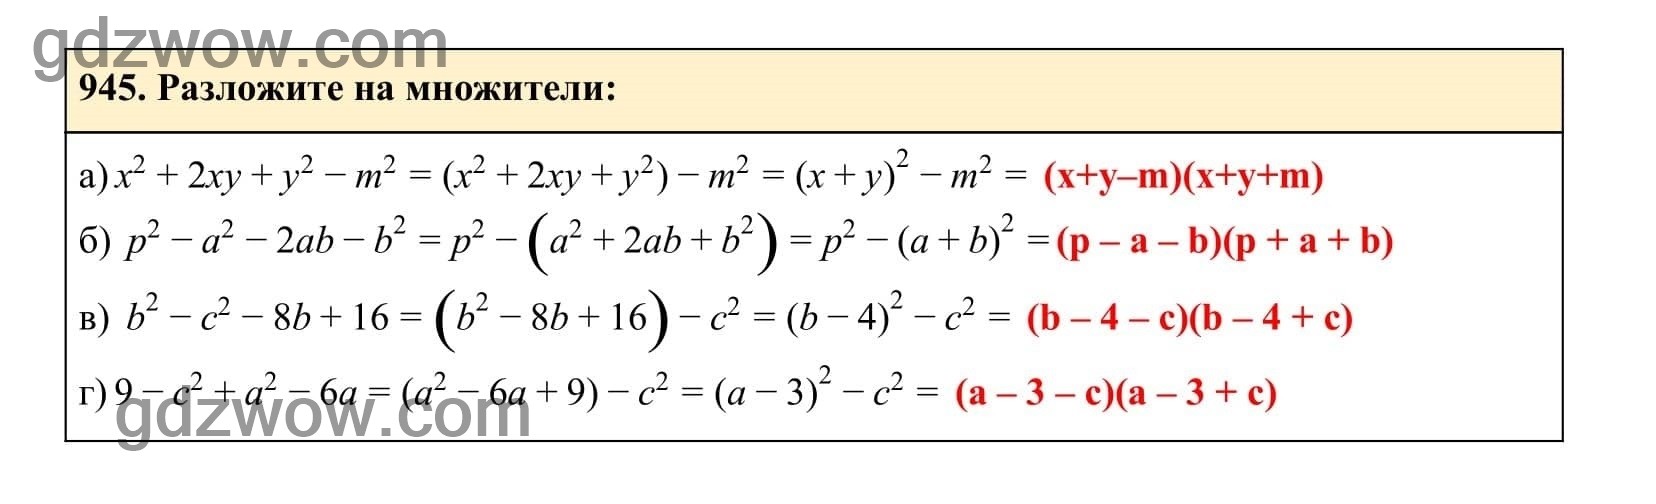 Упражнение 945 - ГДЗ по Алгебре 7 класс Учебник Макарычев (решебник) - GDZwow